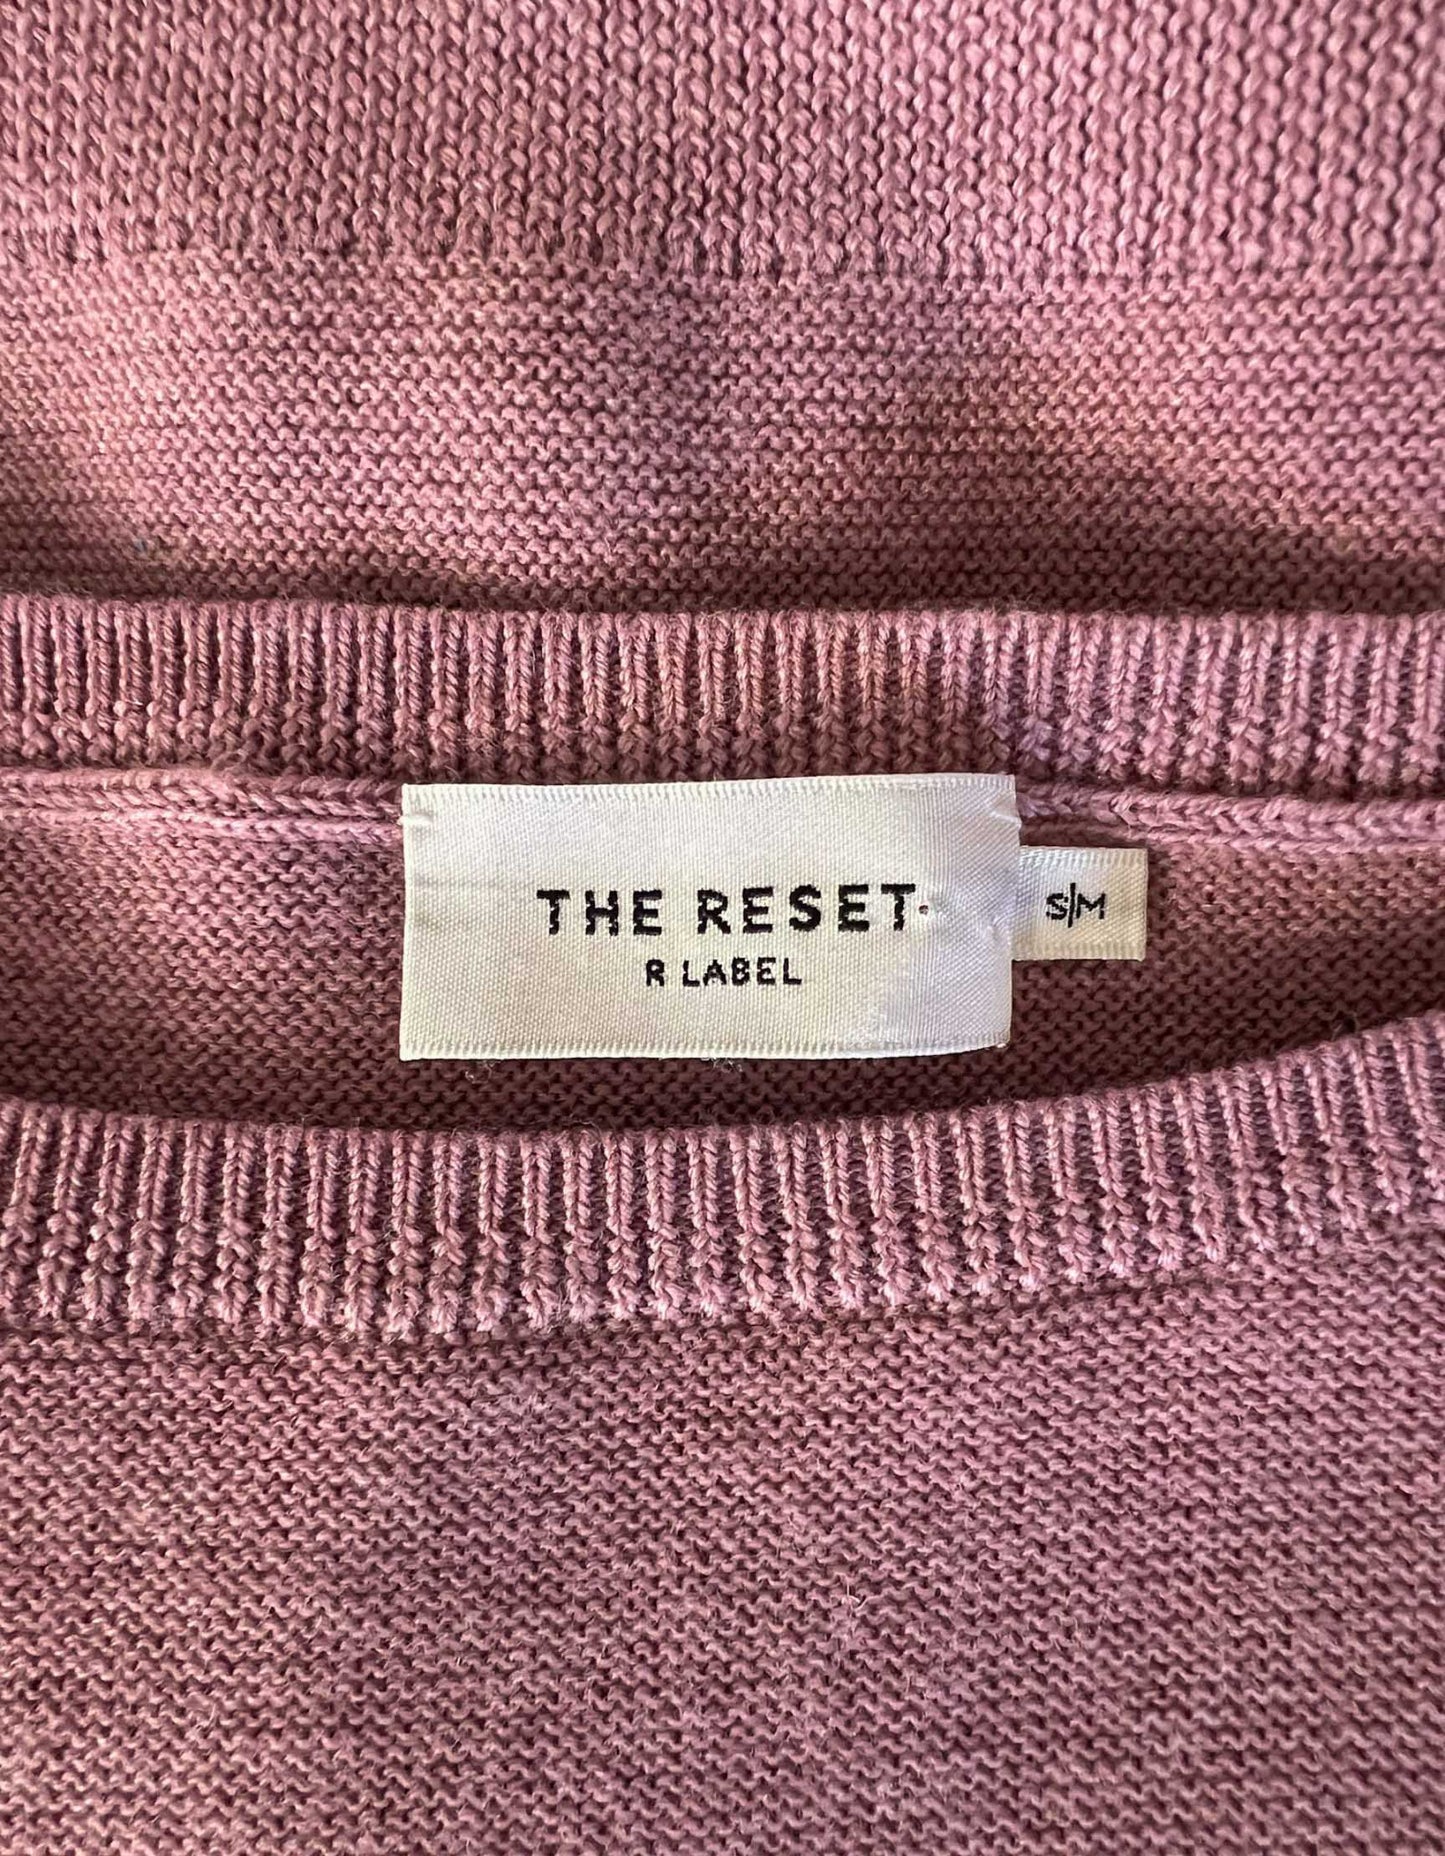 THE RESET R Label Essential Pullover - Small/Medium